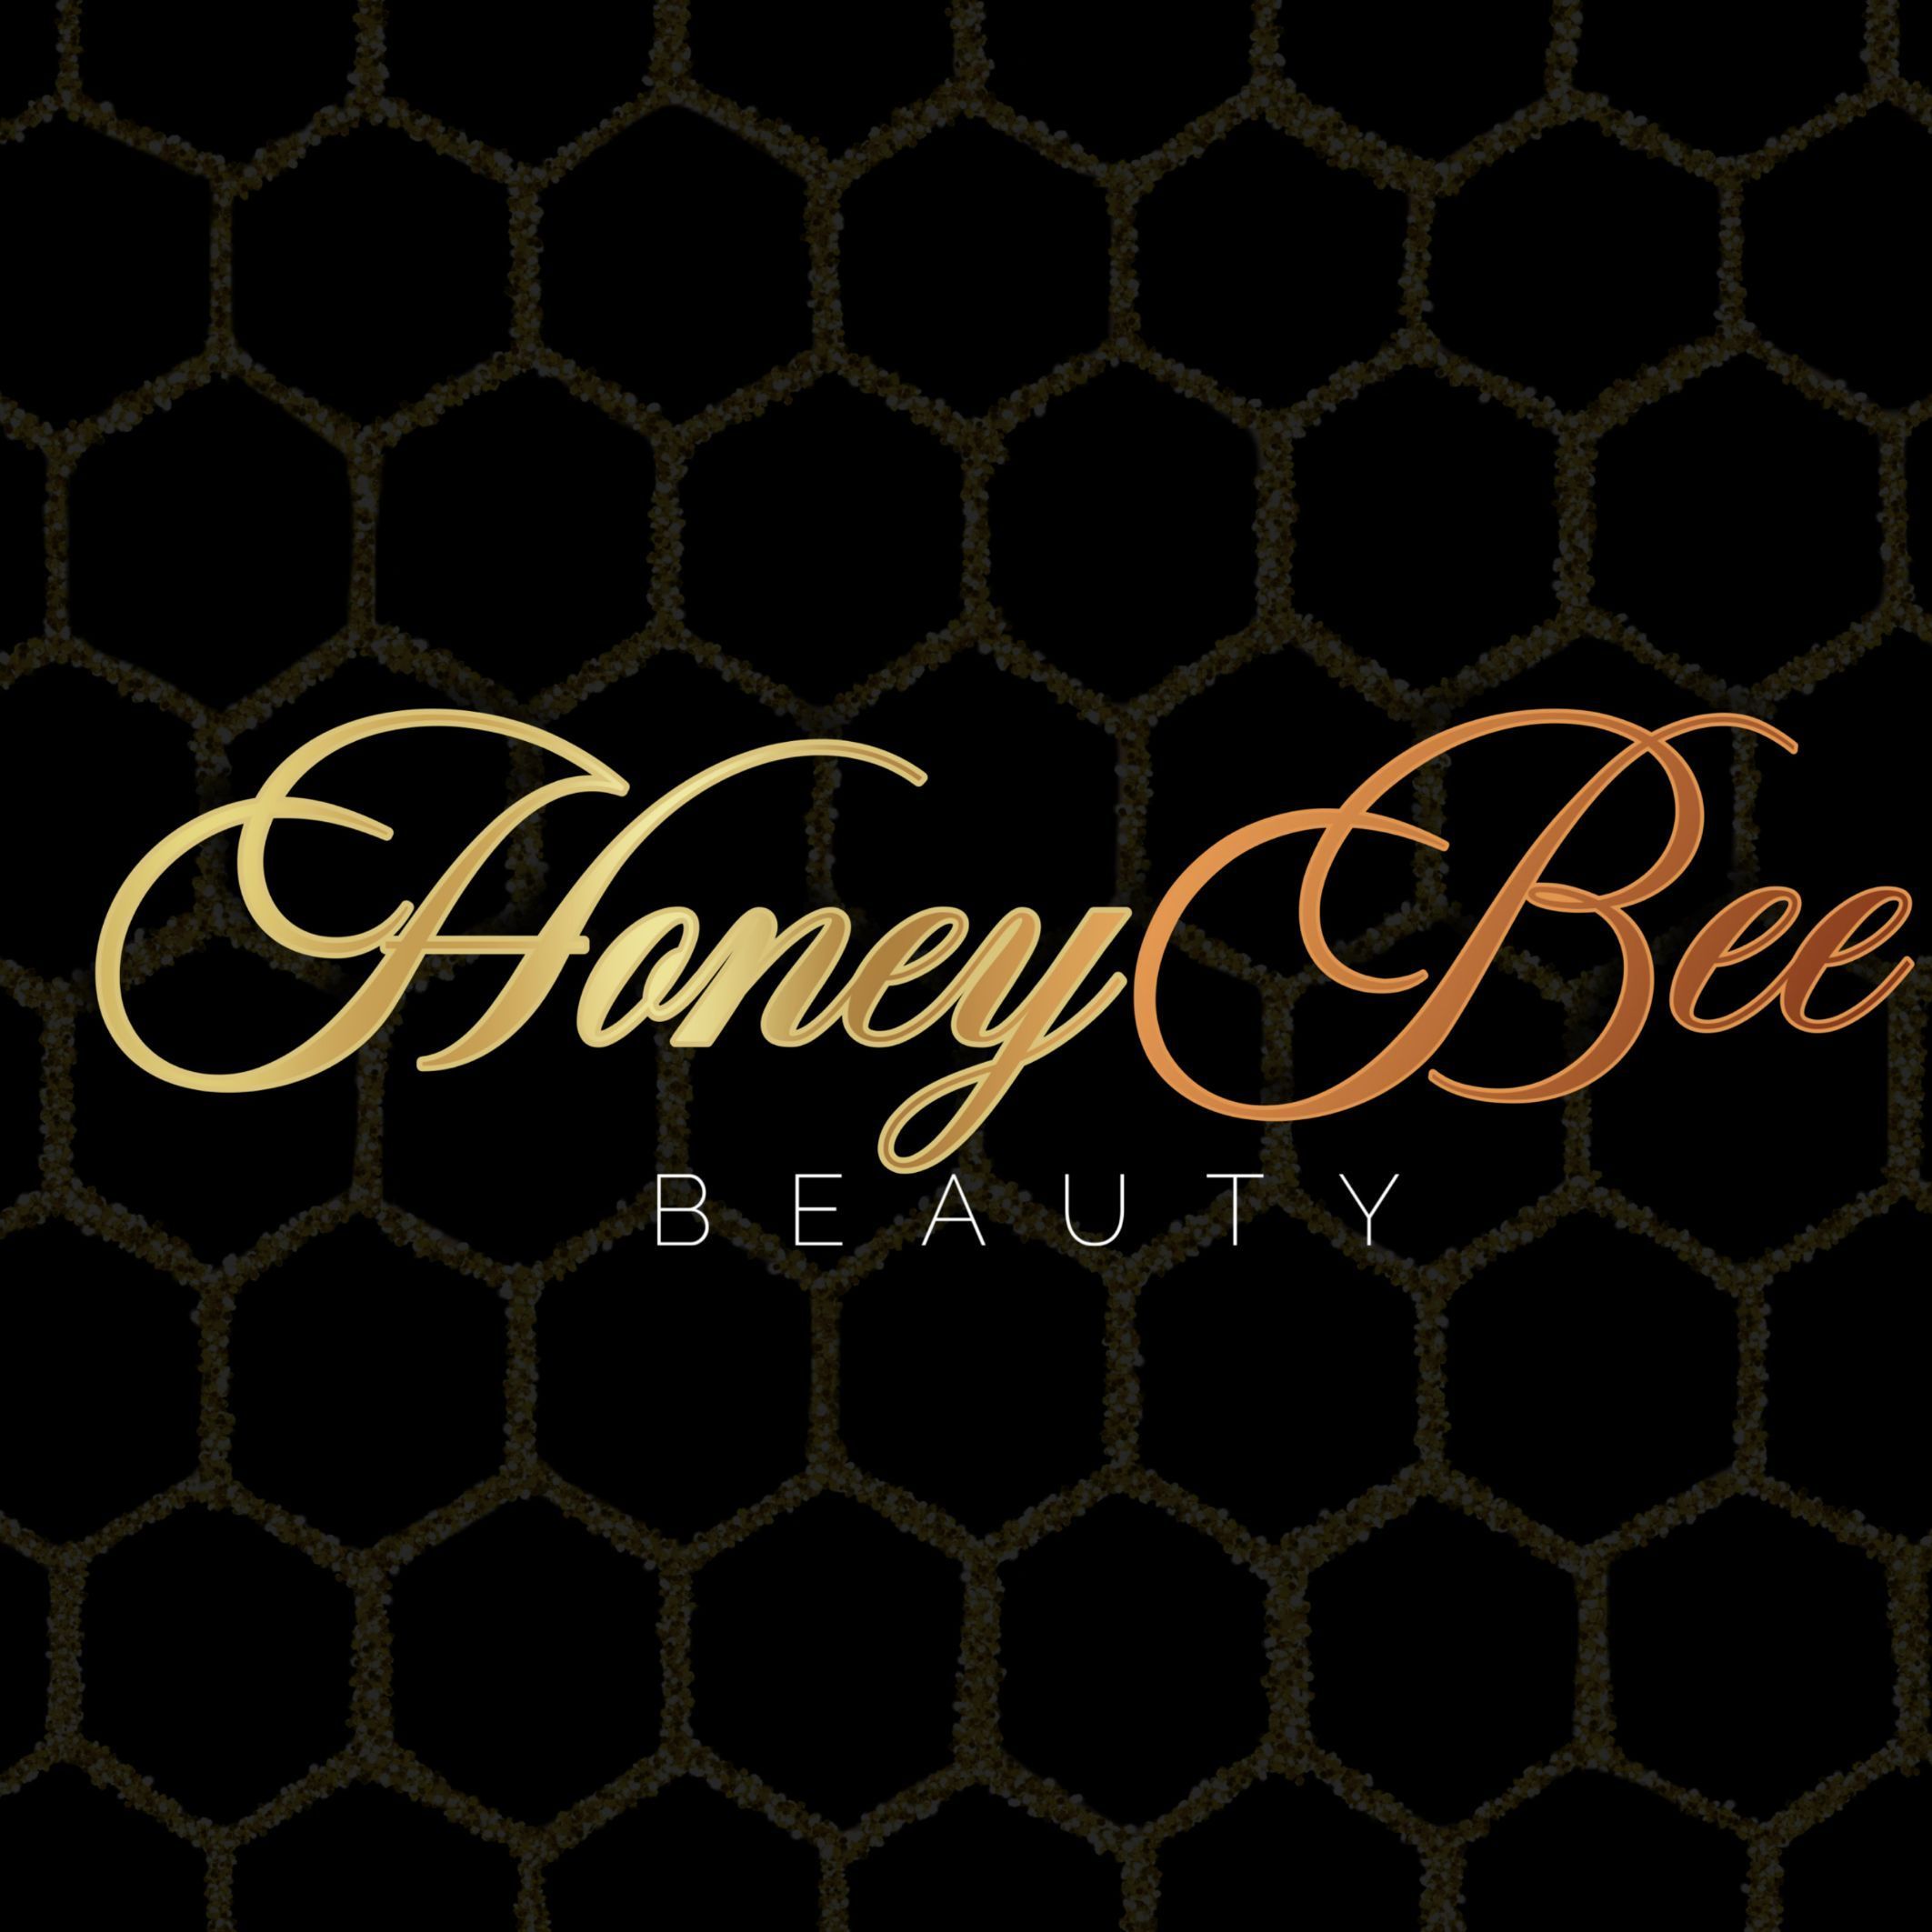 Honeybee Beauty, 13281 W Watson Ln, Surprise, 85379